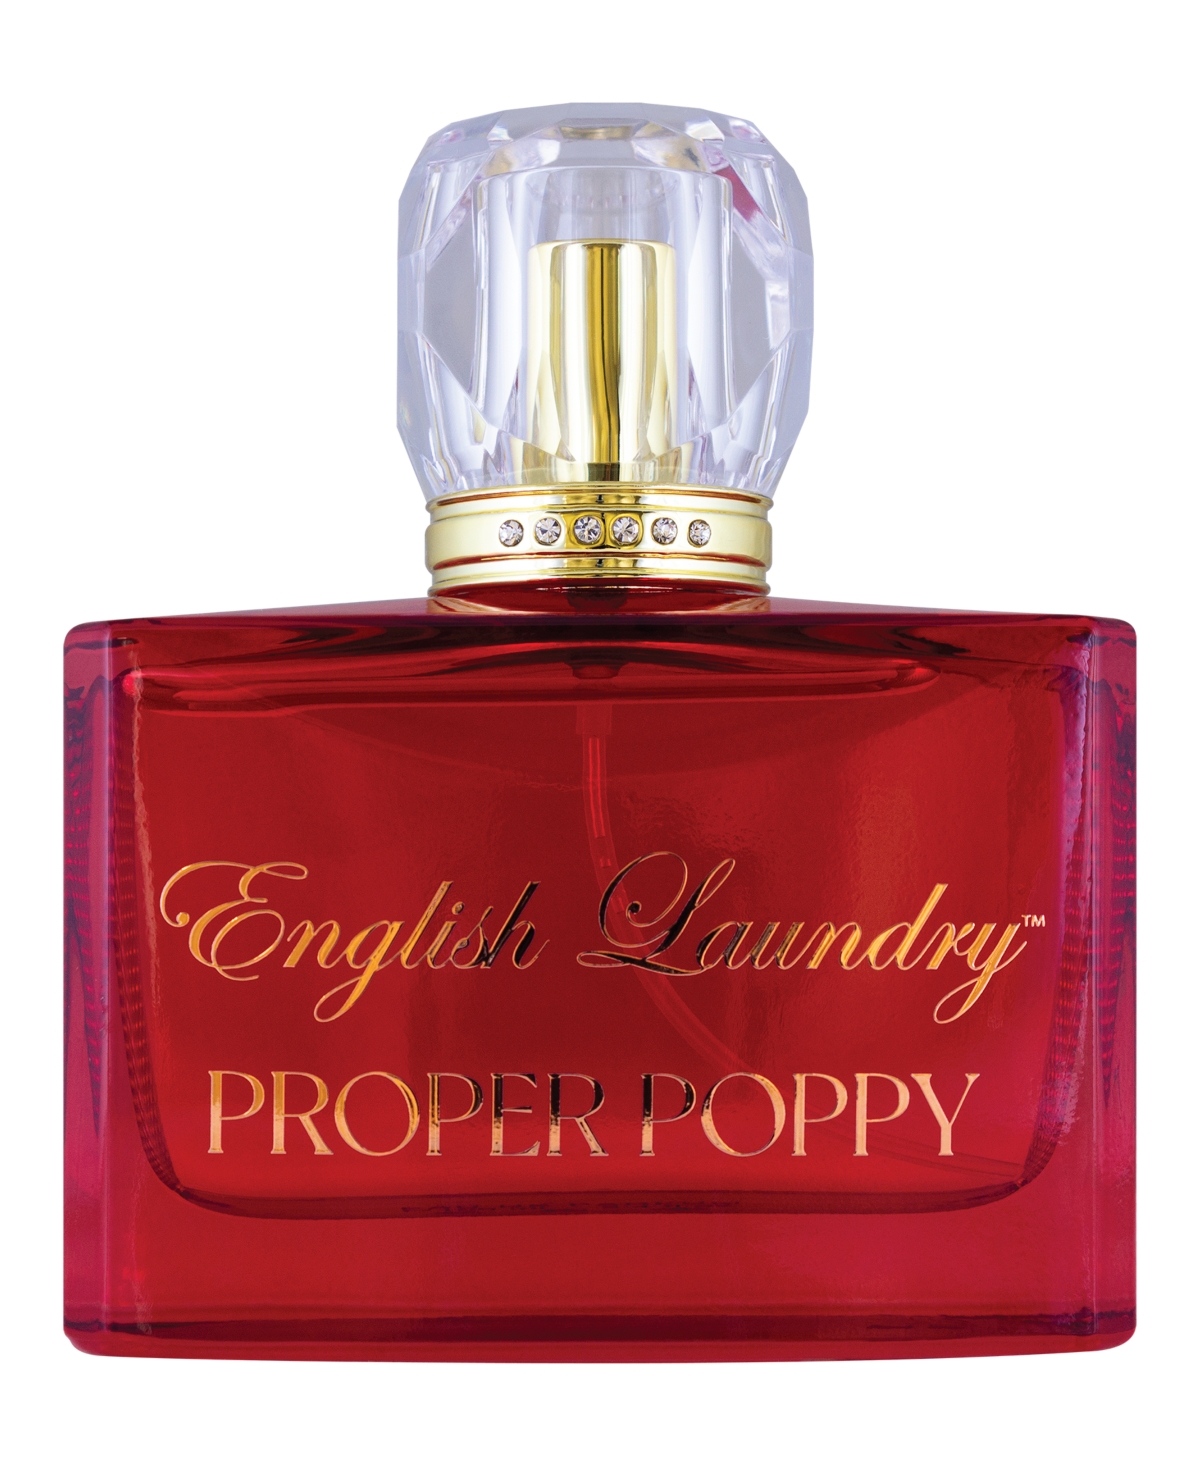 Propper Poppy Eau de Parfum, 3.4 oz.